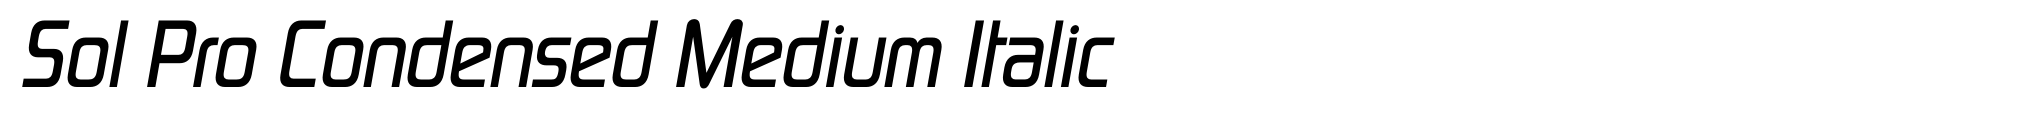 Sol Pro Condensed Medium Italic image